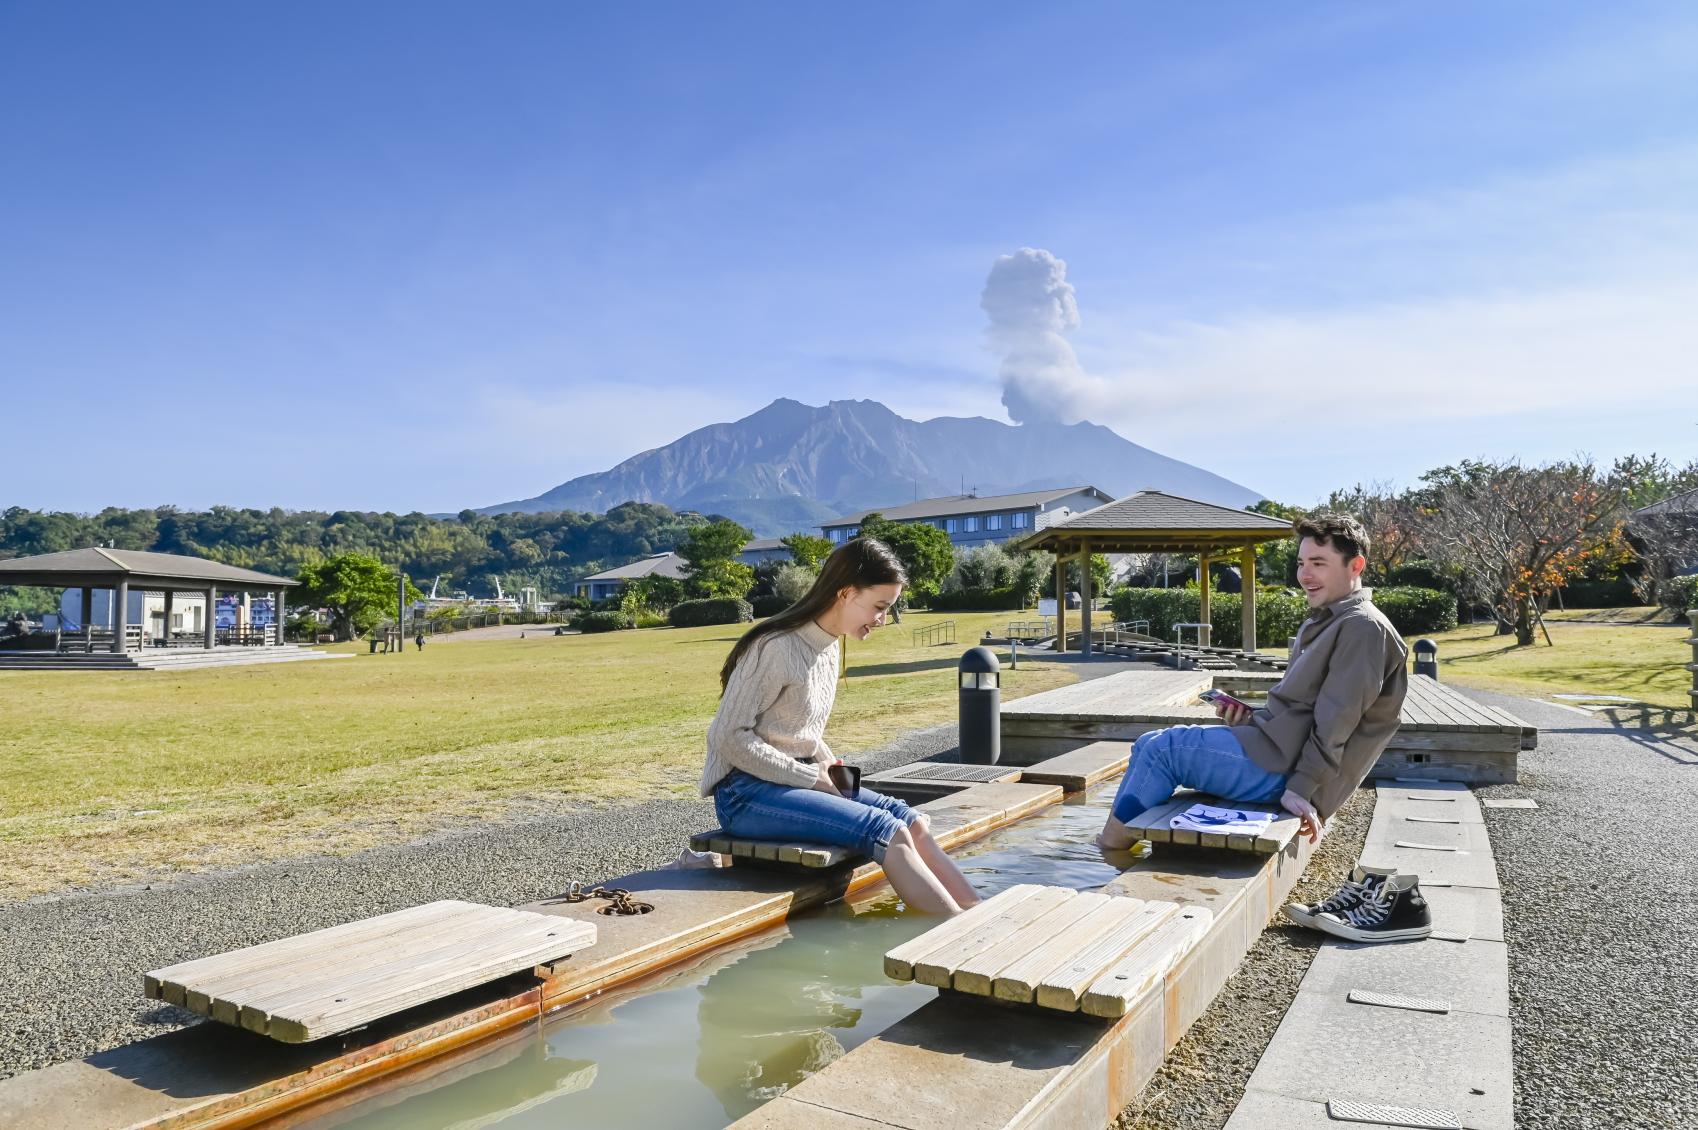  【Day 2】Sakurajima Yogan Nagisa Park 